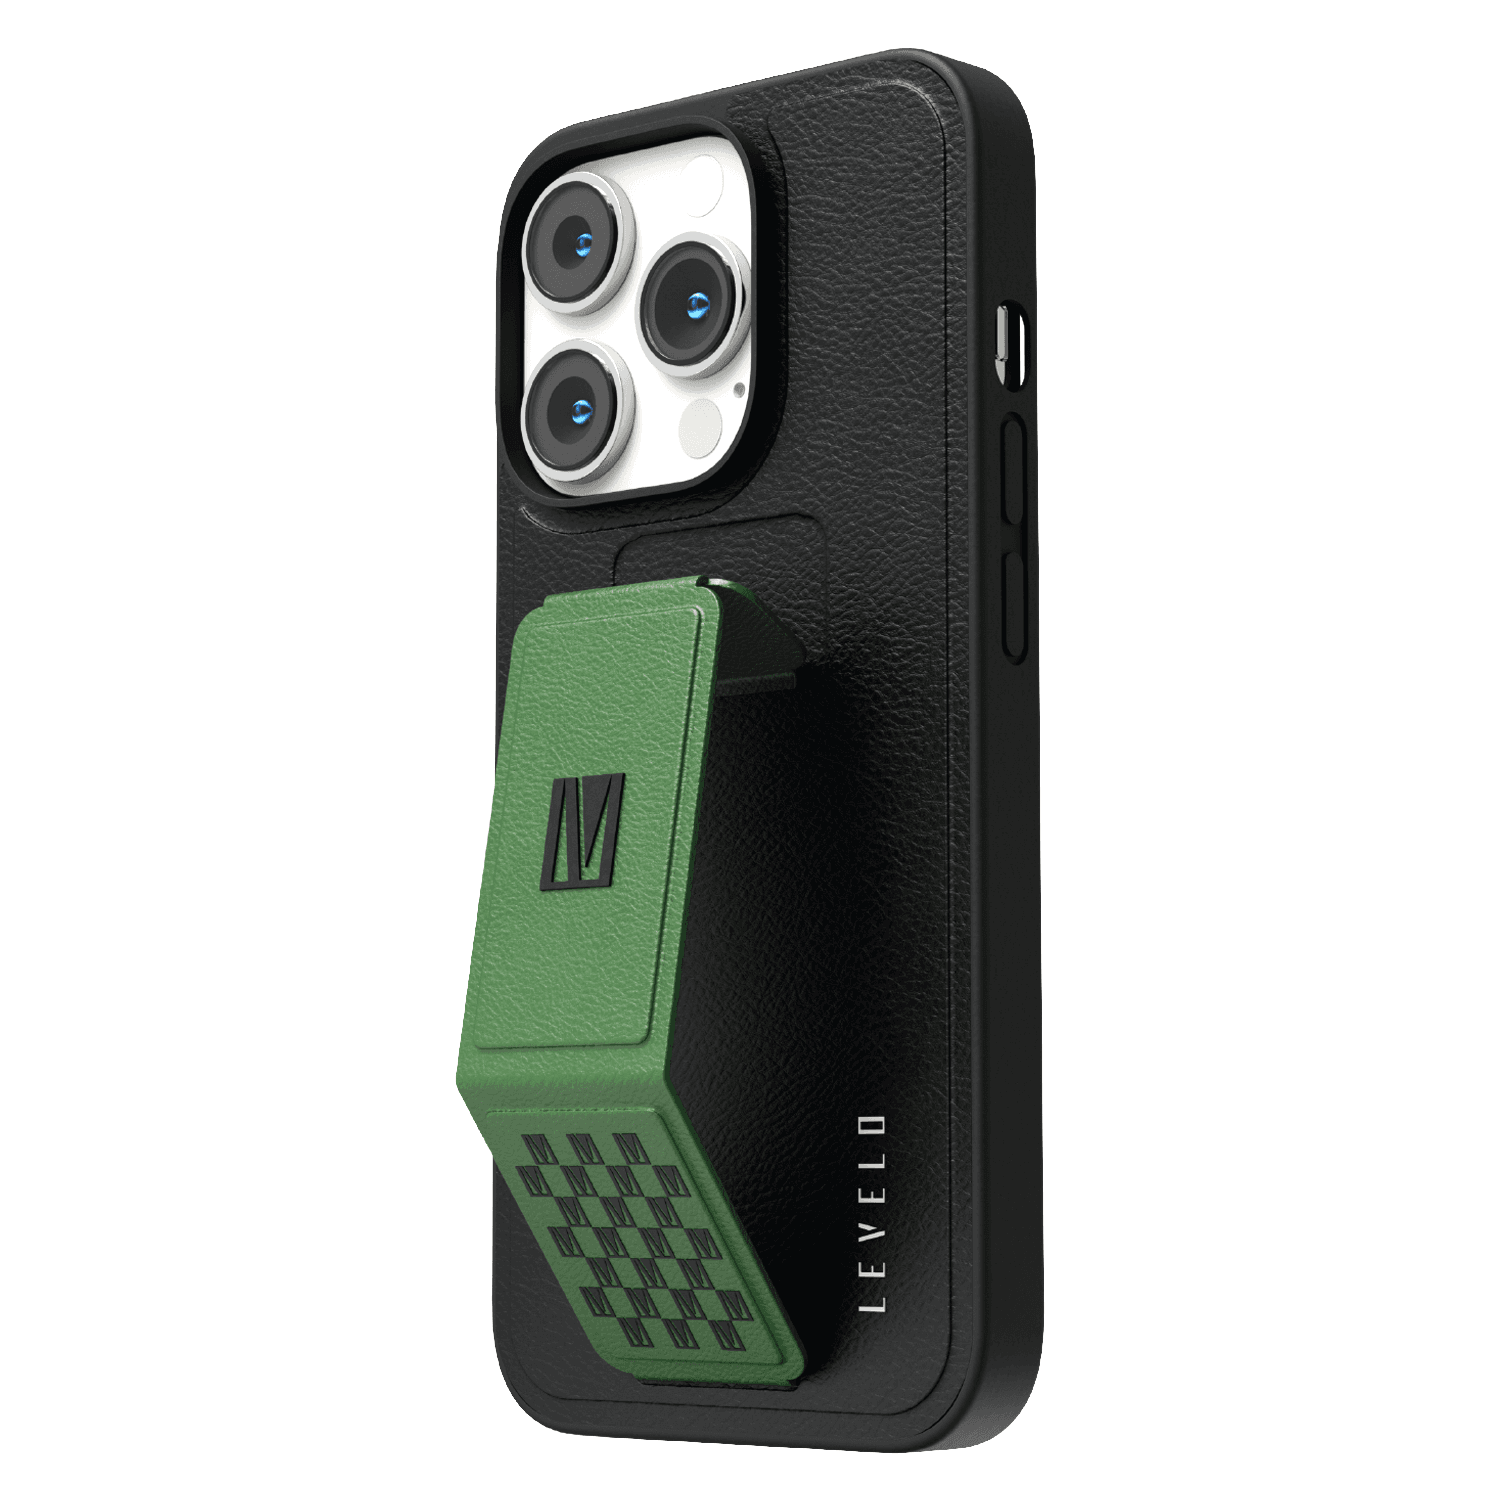 كفر ايفون جلد لجوال ايفون 14 برو ماكس بلون أسود وأخضر مع حامل تثبيت ليفيلو   Levelo Morphix Gripstand iPhone 14 Pro Max PU Leather Case Pacific Green - cG9zdDoxMzk0MjEw